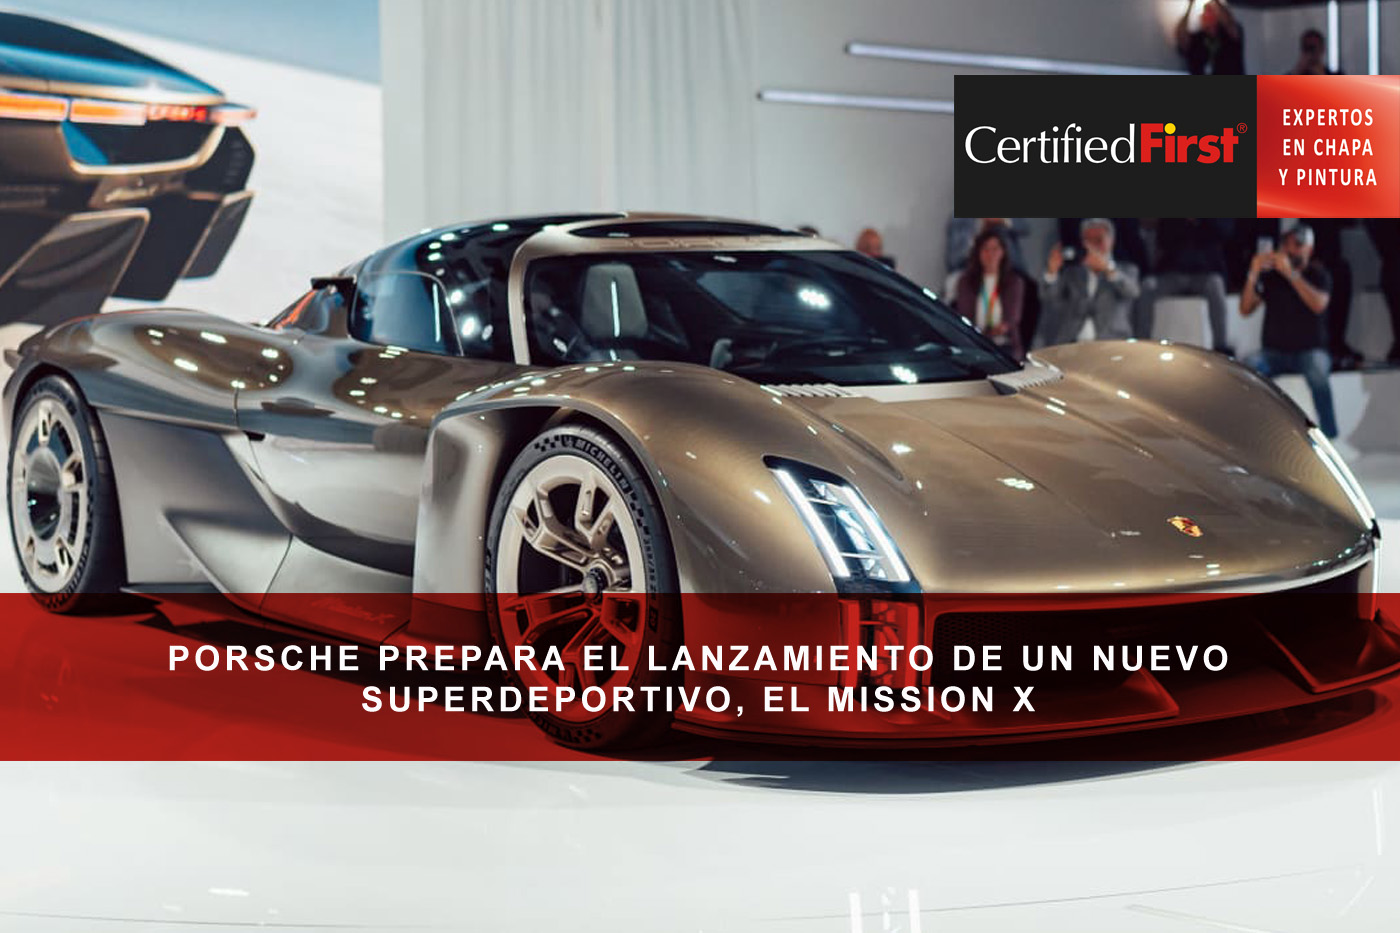 Porsche prepara el lanzamiento de un nuevo superdeportivo, el Porsche Mission X